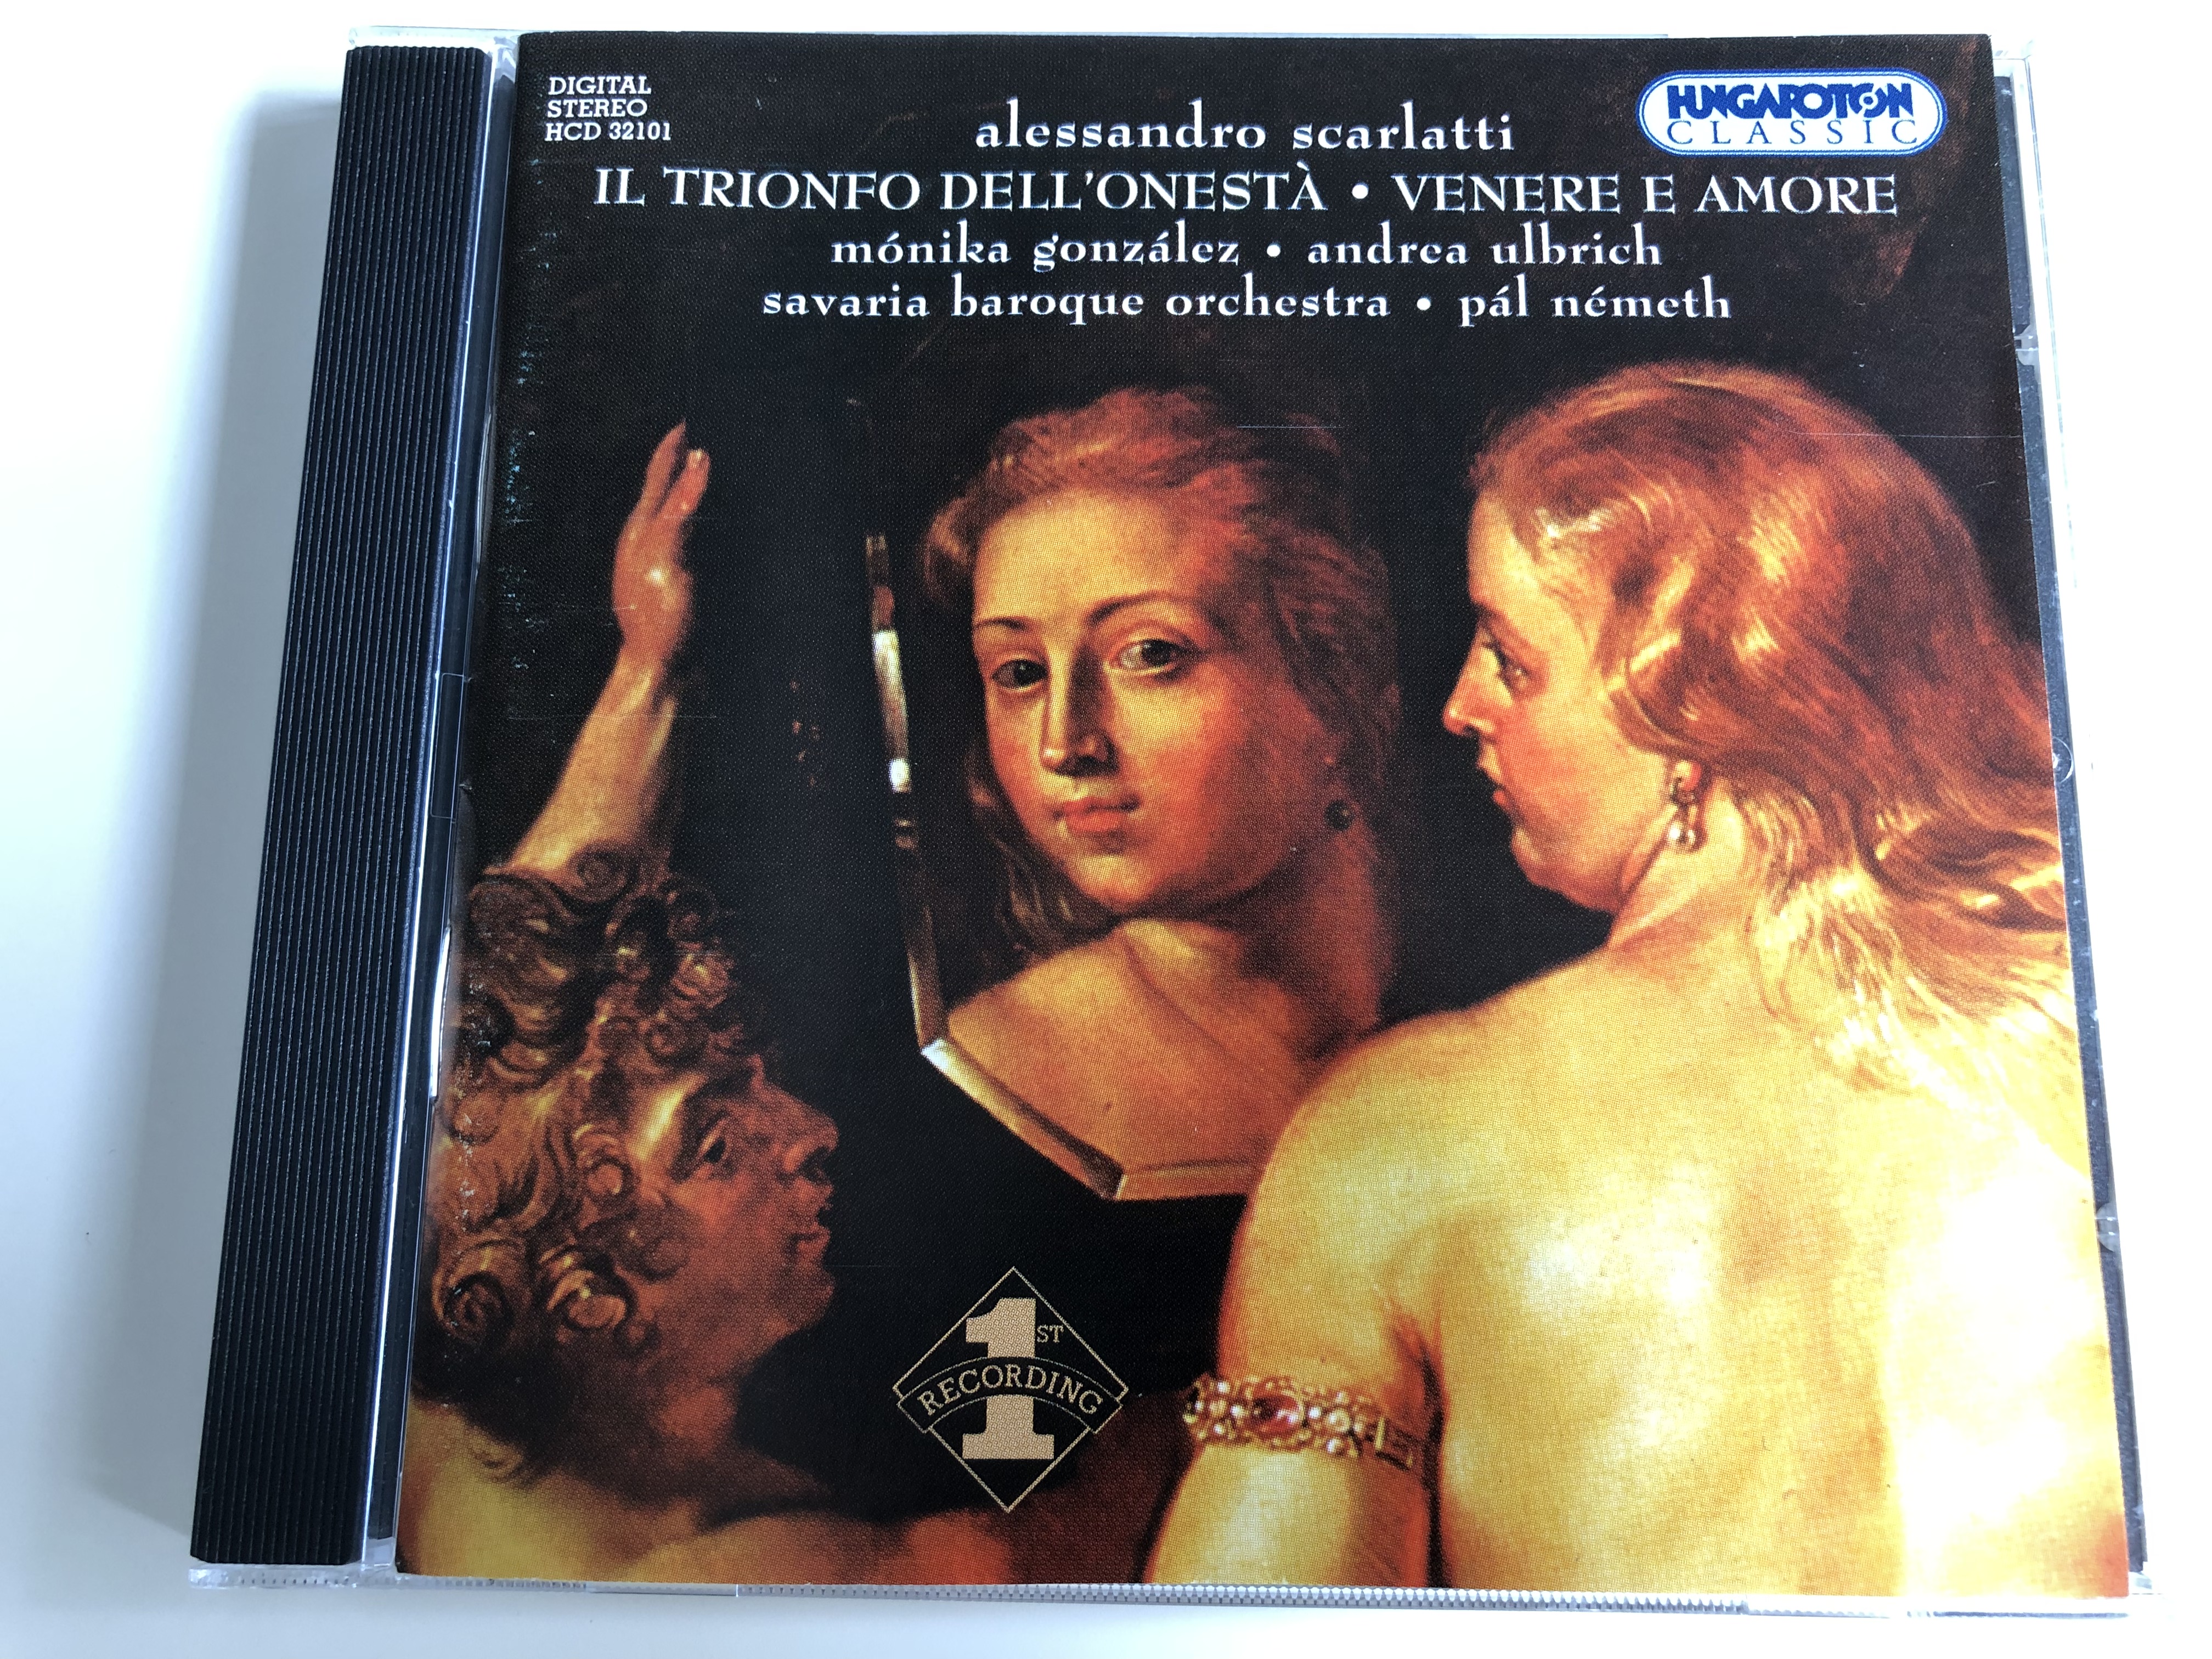 alessandro-scarlatti-il-trionfo-dell-onest-venere-e-amore-m-nika-gonz-lez-andrea-ulbrich-savaria-baroque-orchestra-conducted-by-p-l-n-meth-hungaroton-classic-hcd-32101-audio-cd-2003-1-.jpg